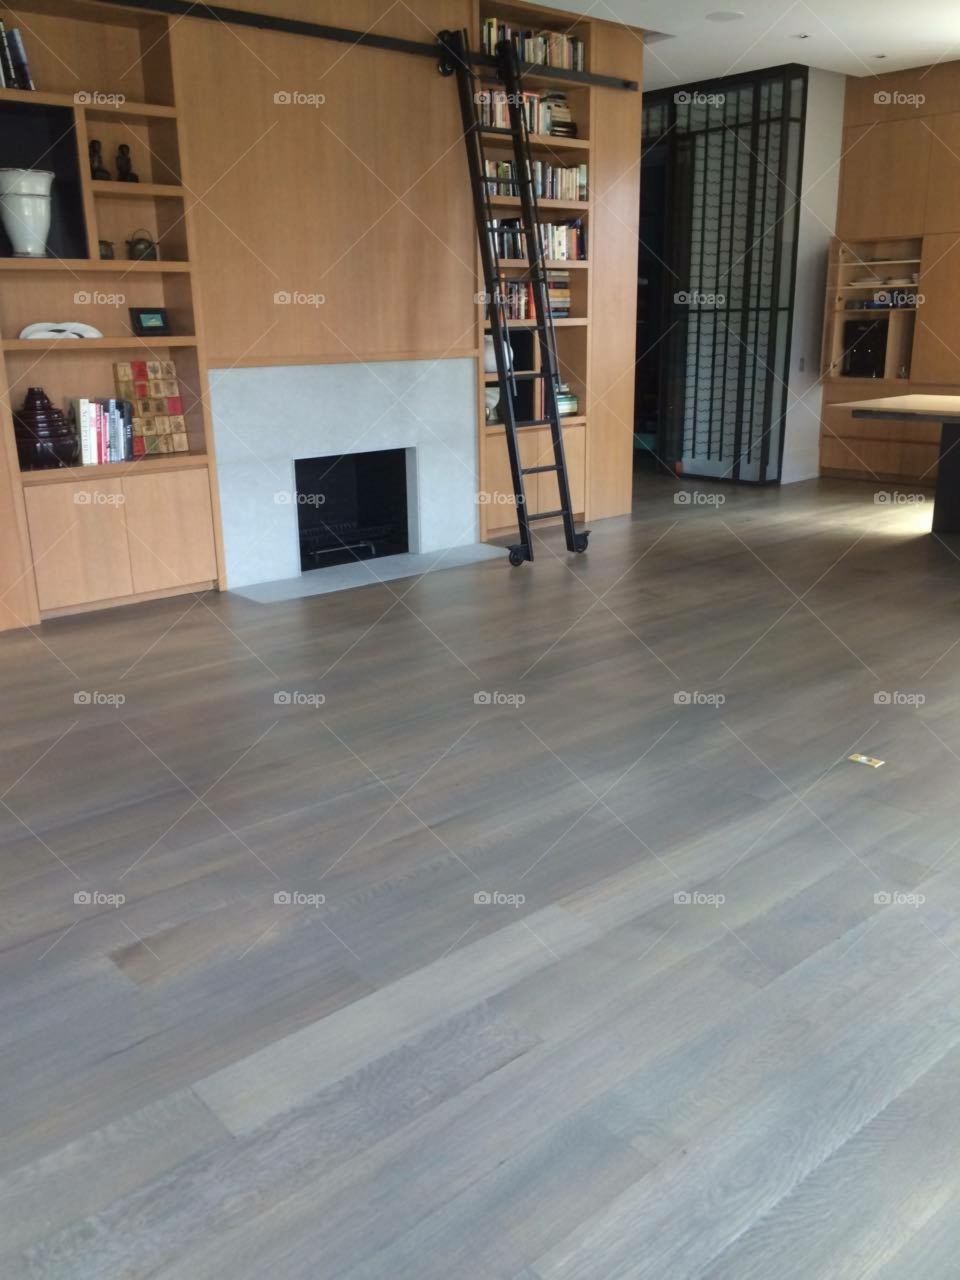 Wood floors 